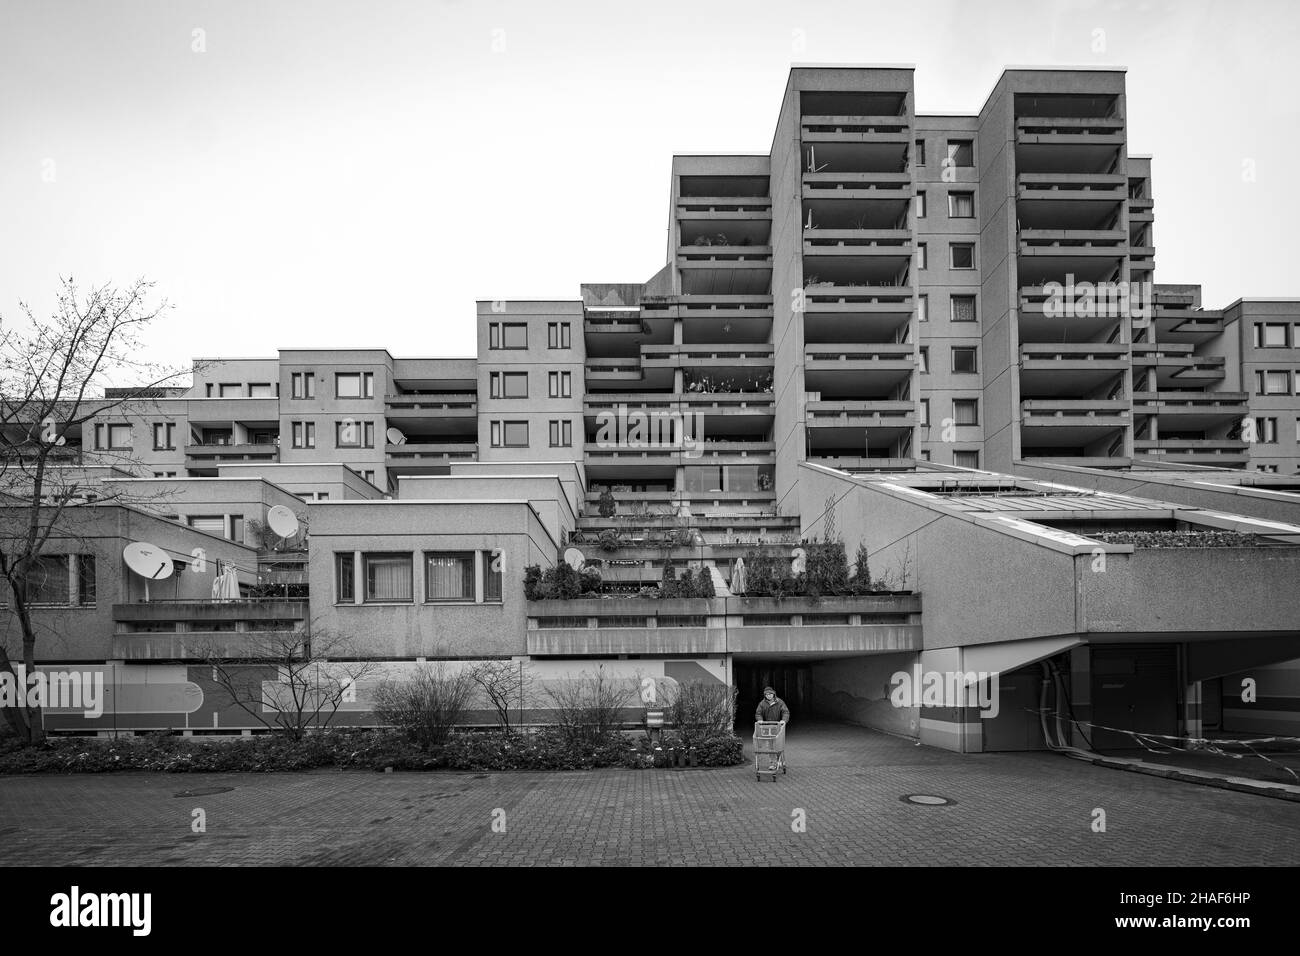 Schöneberger Terrassen, Berlin. Sozialer Wohnungsbau der 1970er Jahre Stockfoto